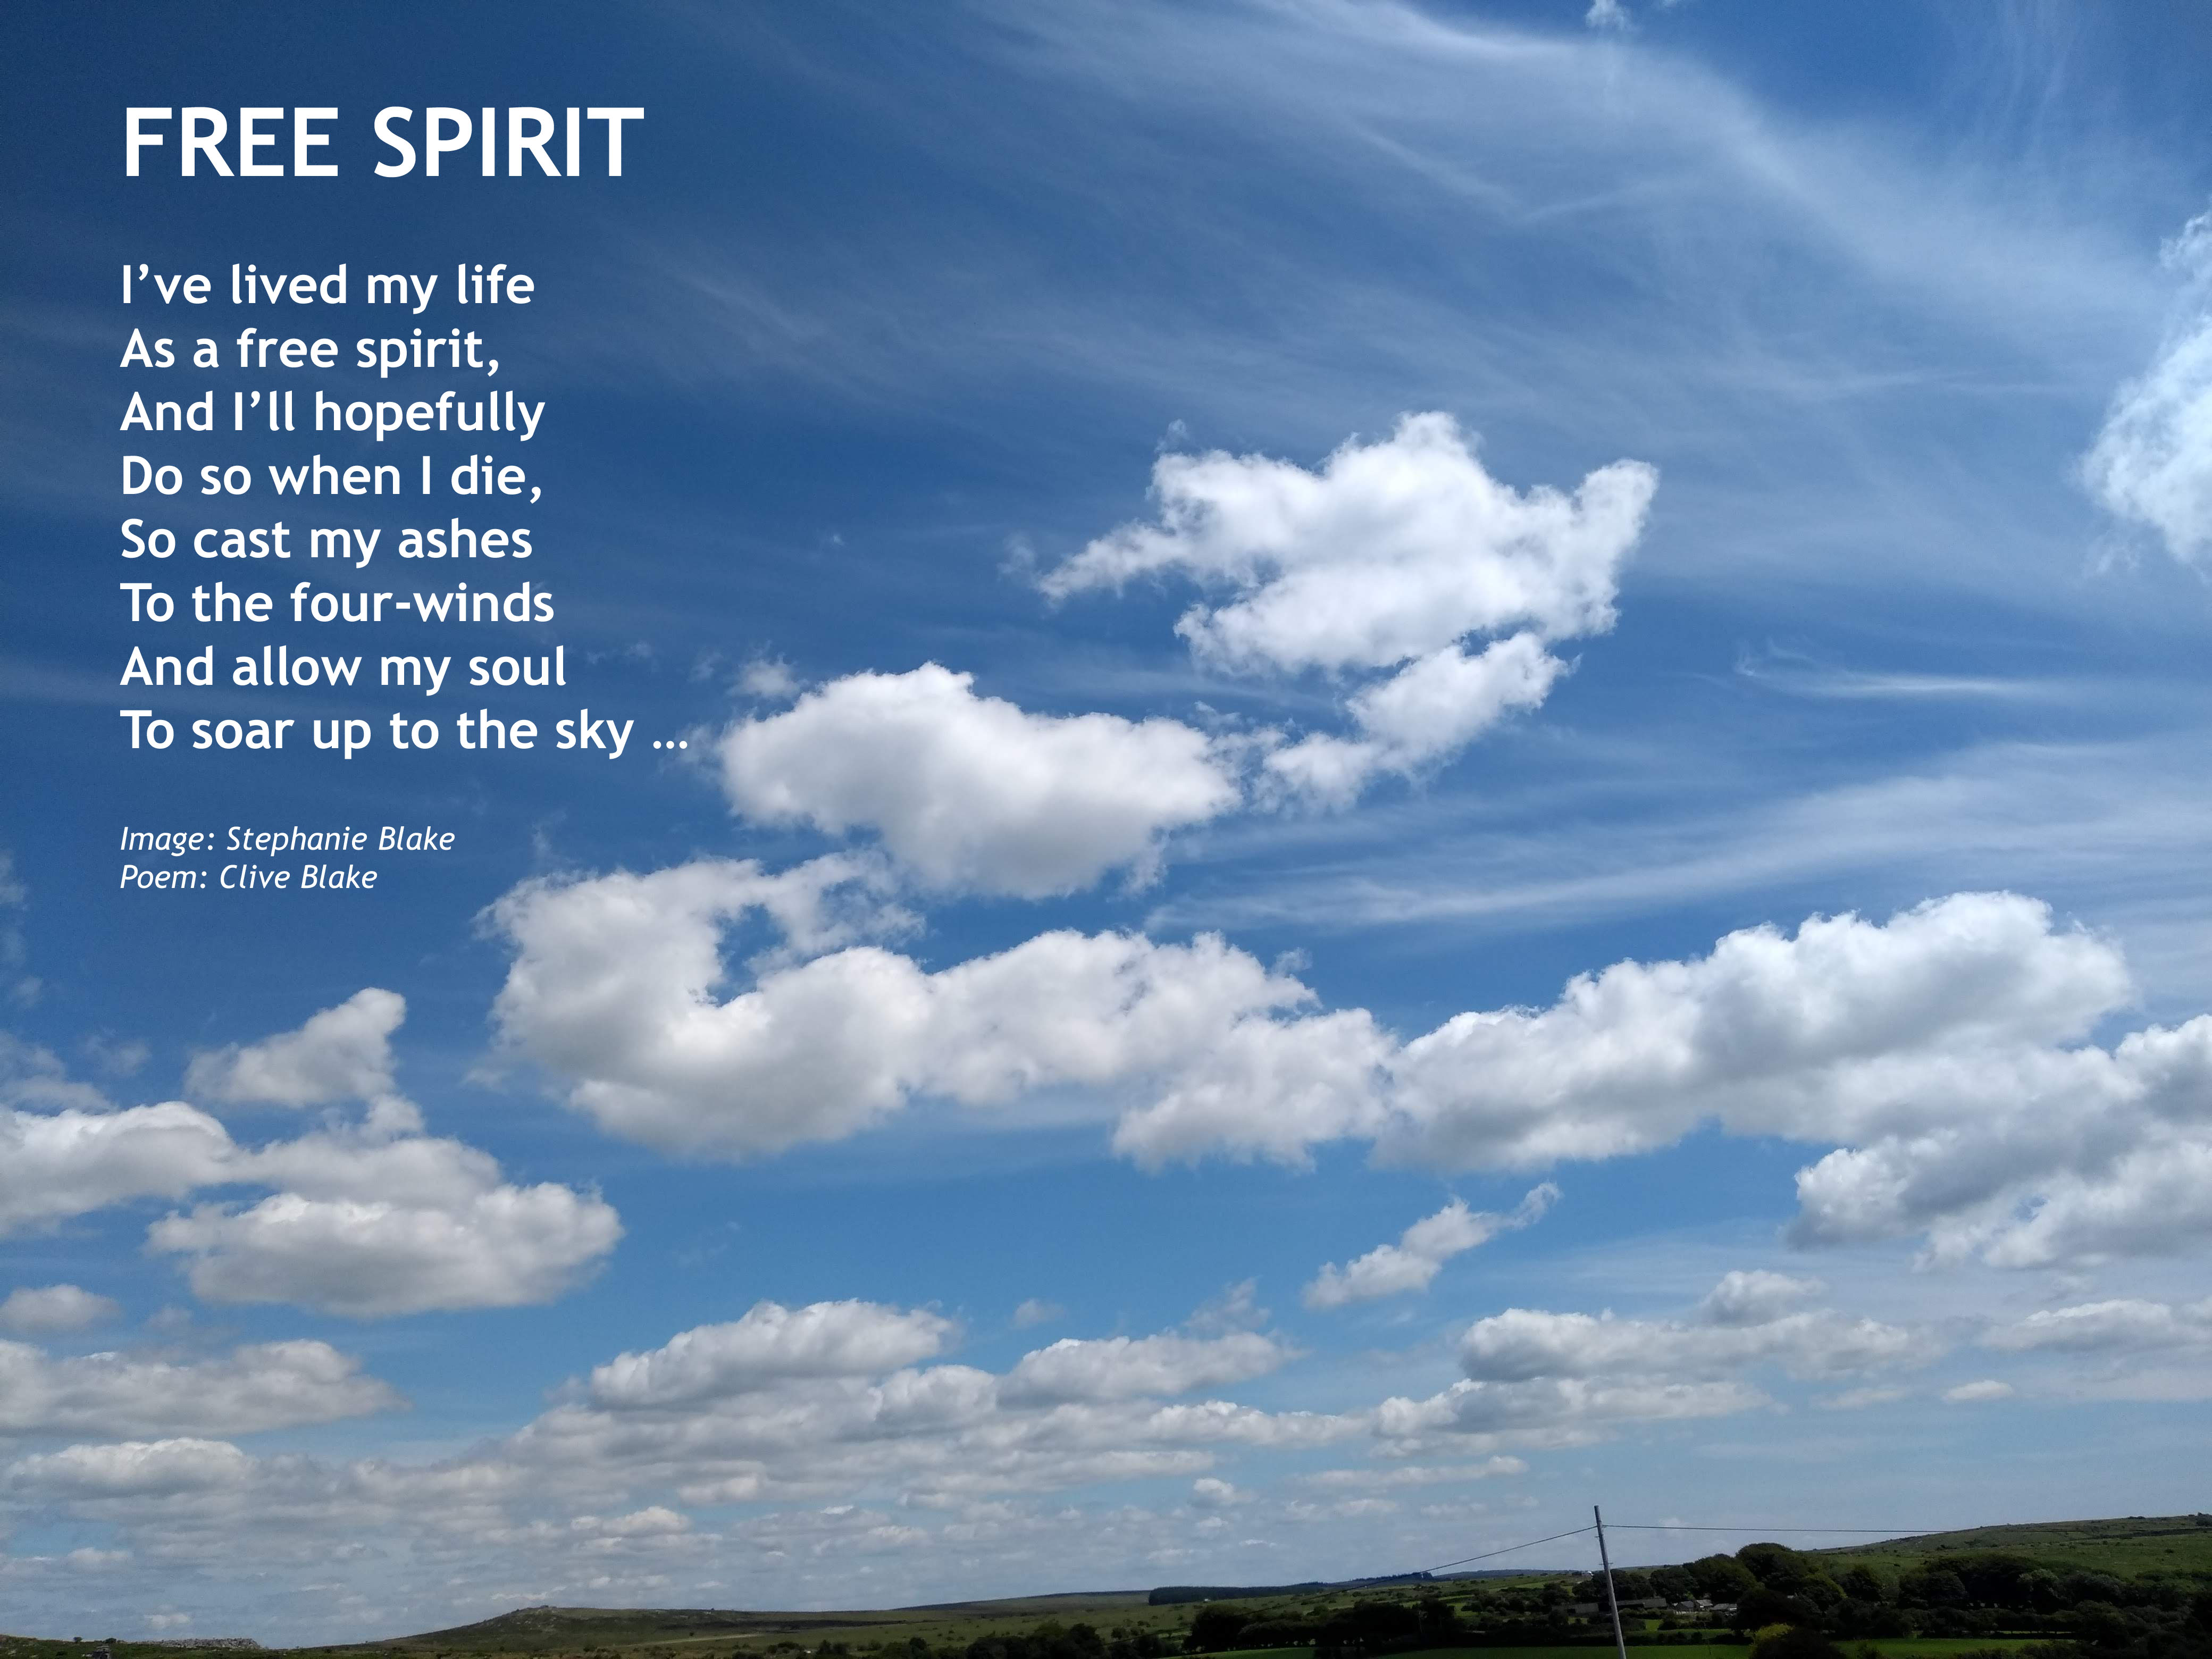 Free Spirit - Free Spirit Poem by Clive Blake